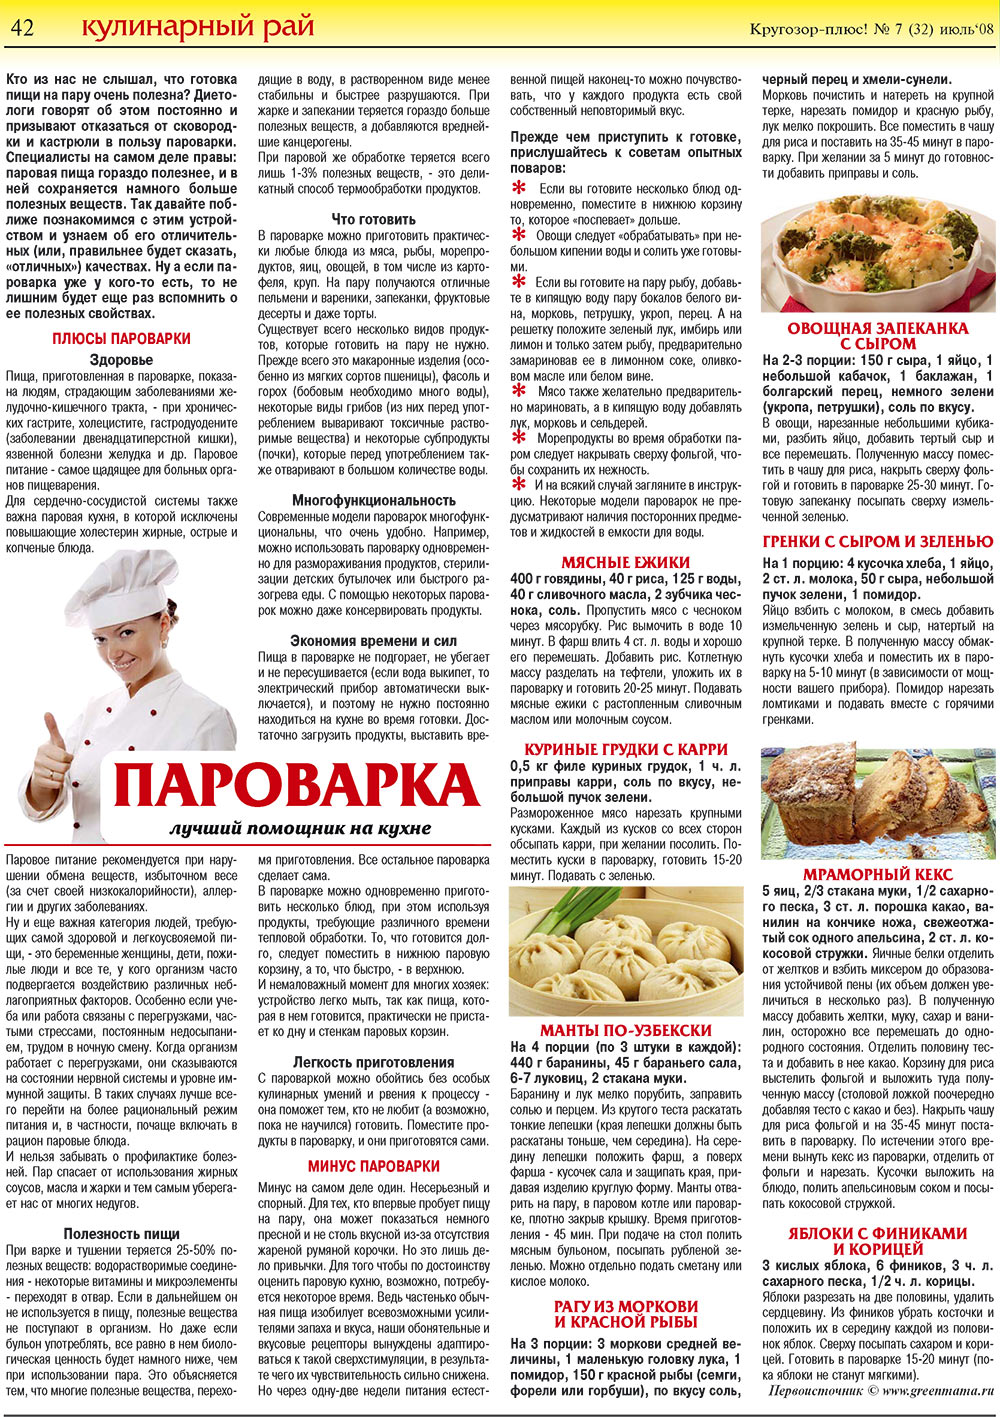 Кругозор плюс!, газета. 2008 №7 стр.42